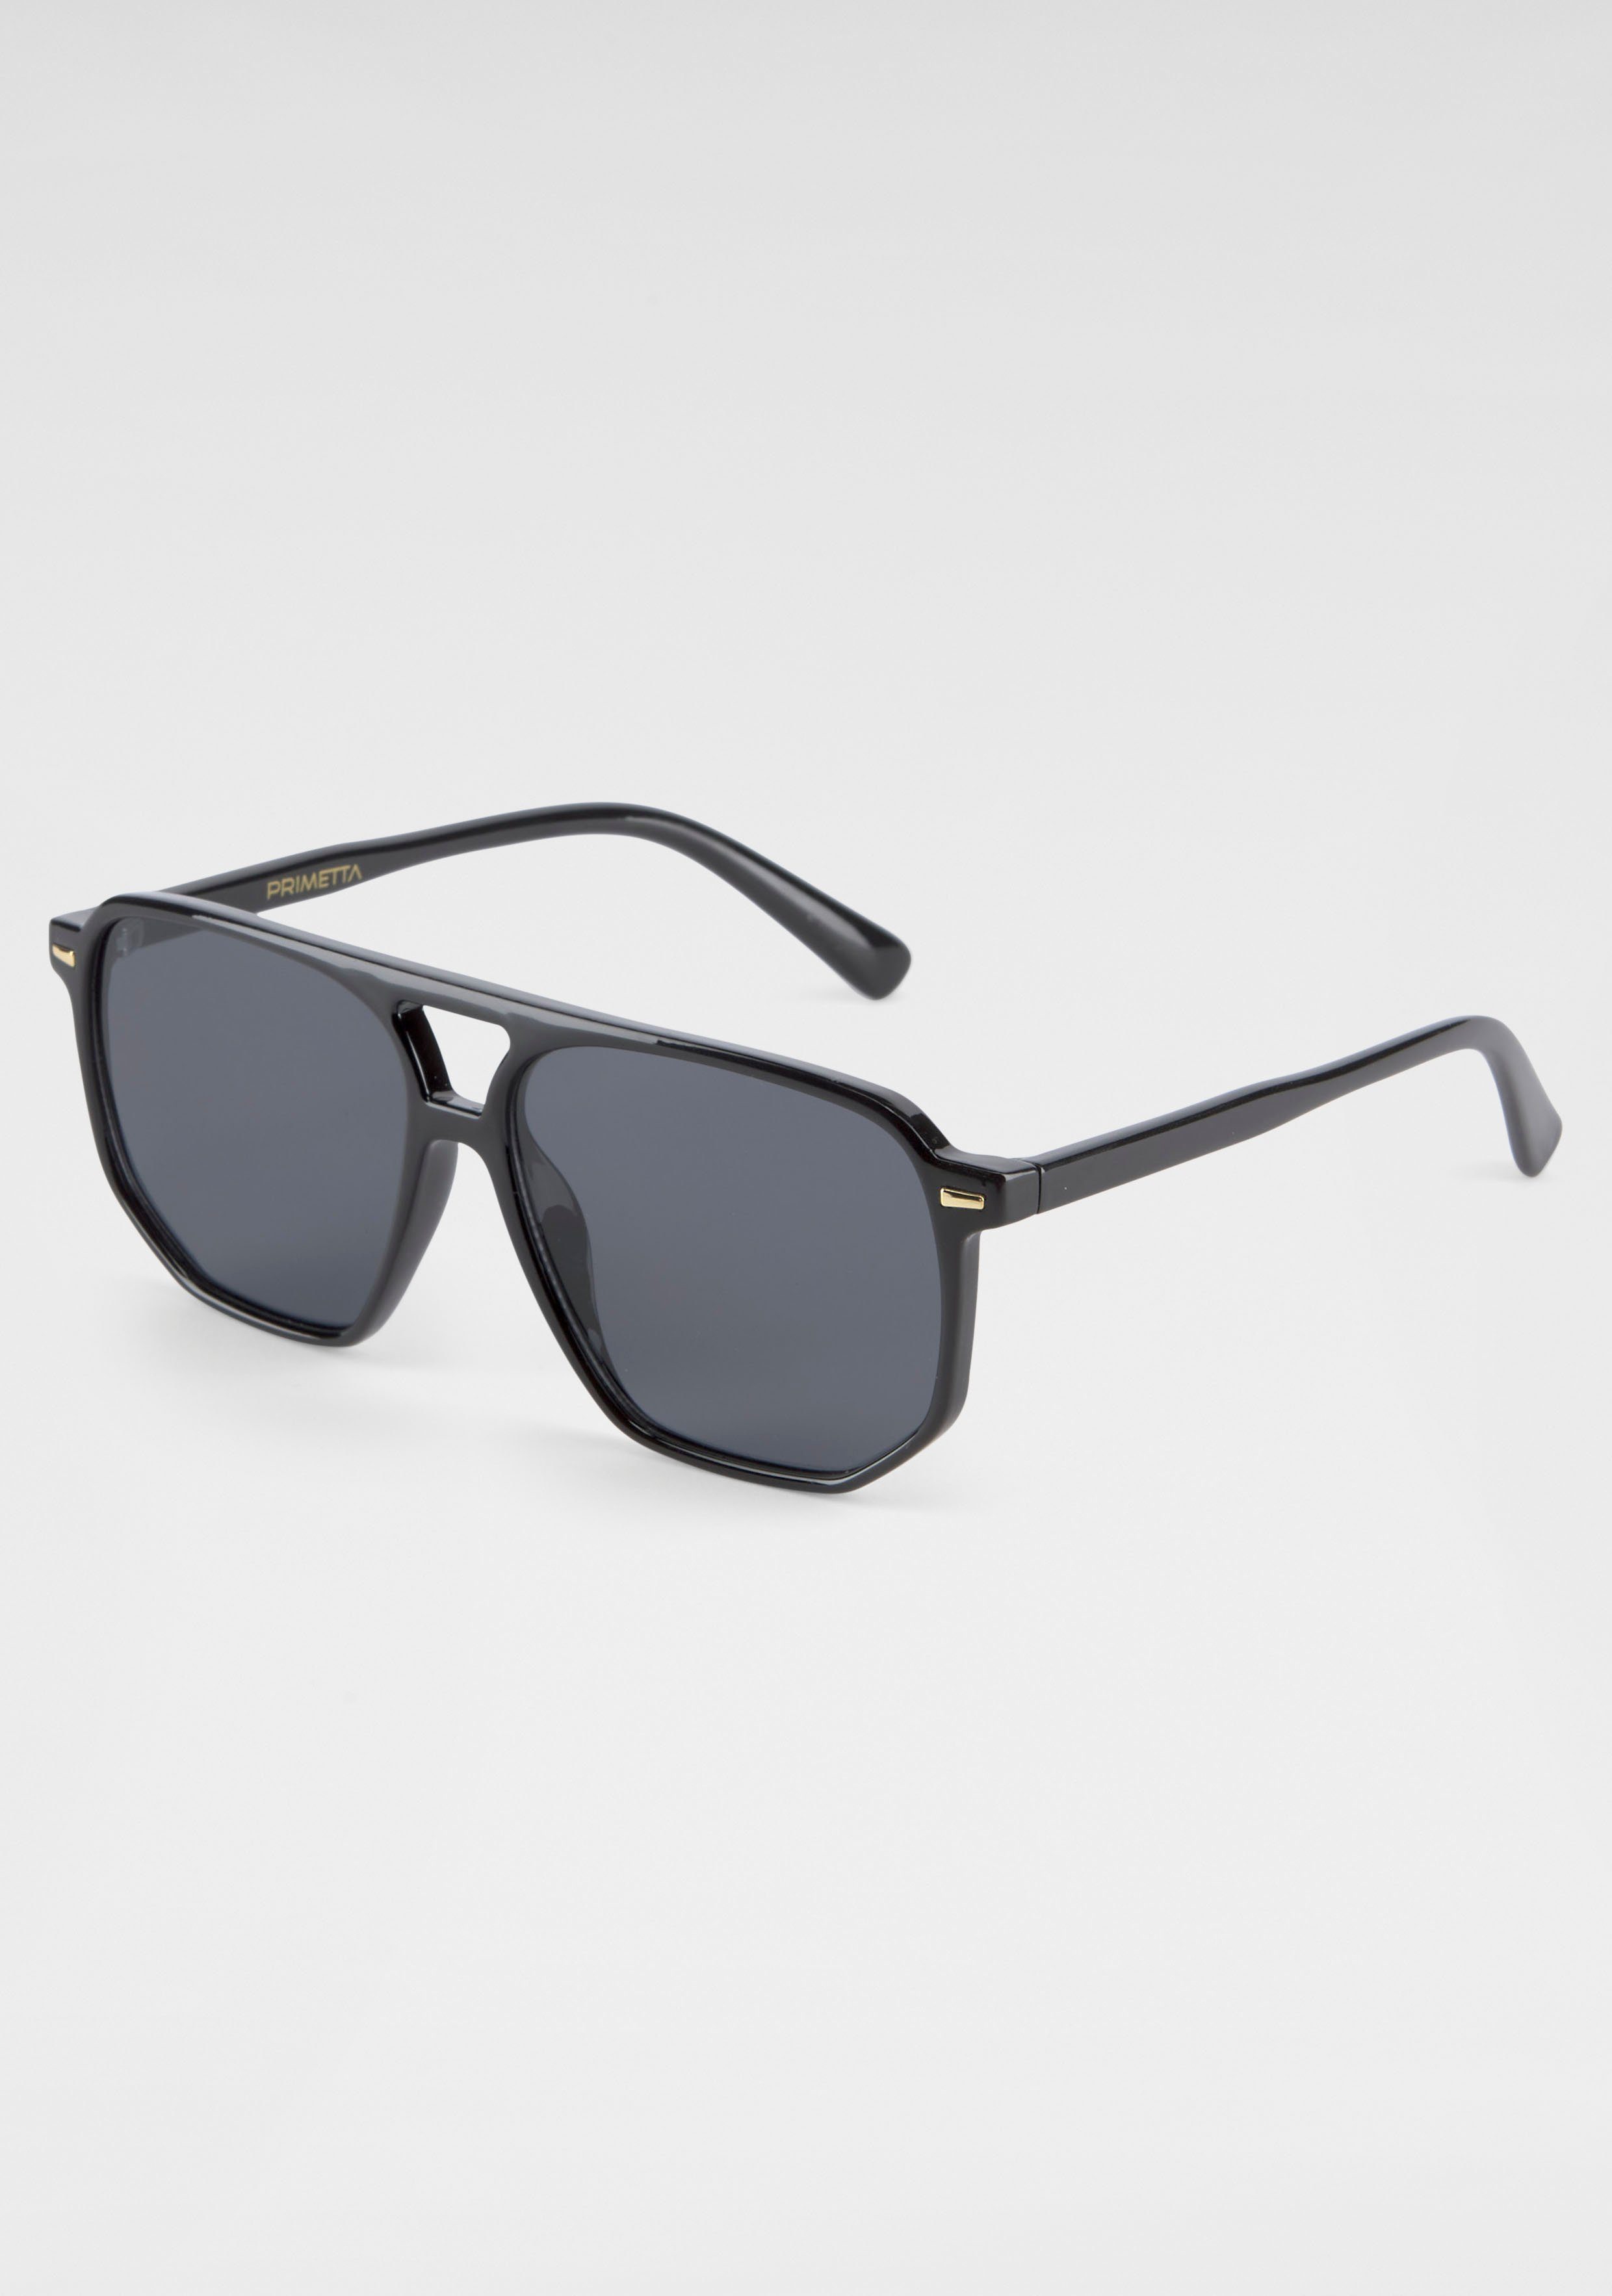 Sonnenbrille schwarz Eyewear SPIRIT YOUNG LONDON Trendige Vollrand-Sonnenbrille